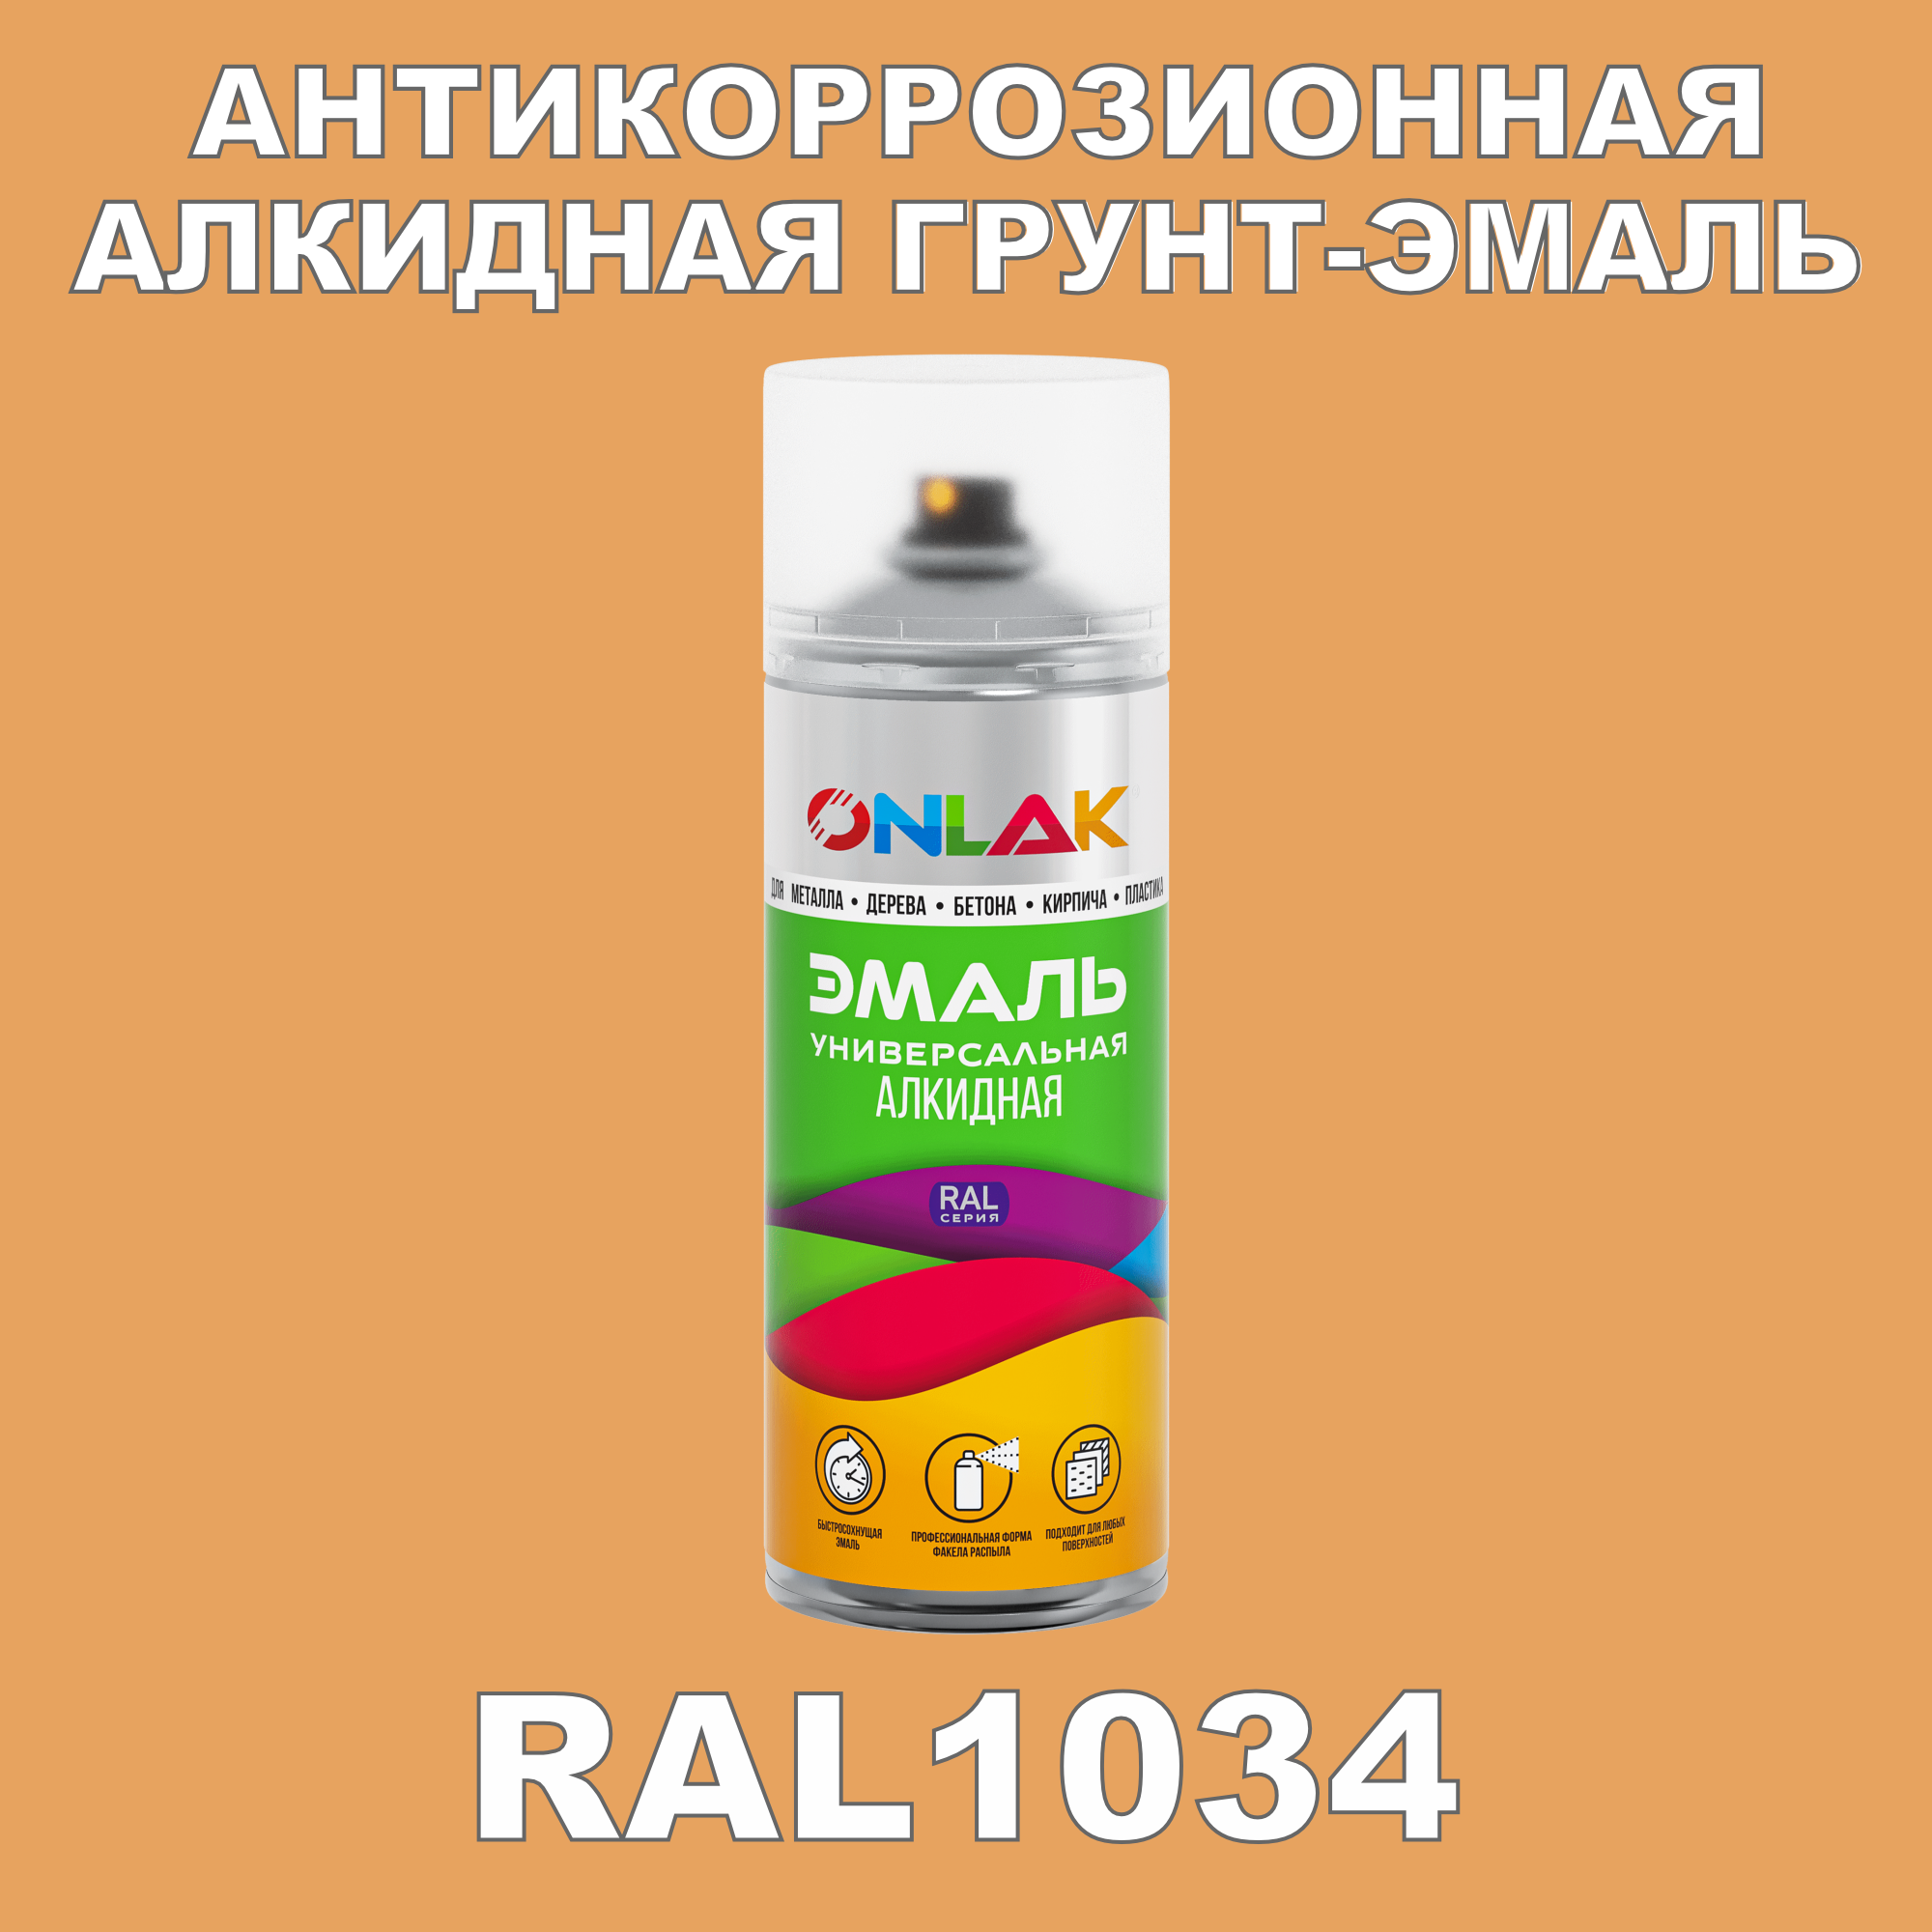 Антикоррозионная грунт-эмаль ONLAK RAL1034 полуматовая для металла и защиты от ржавчины